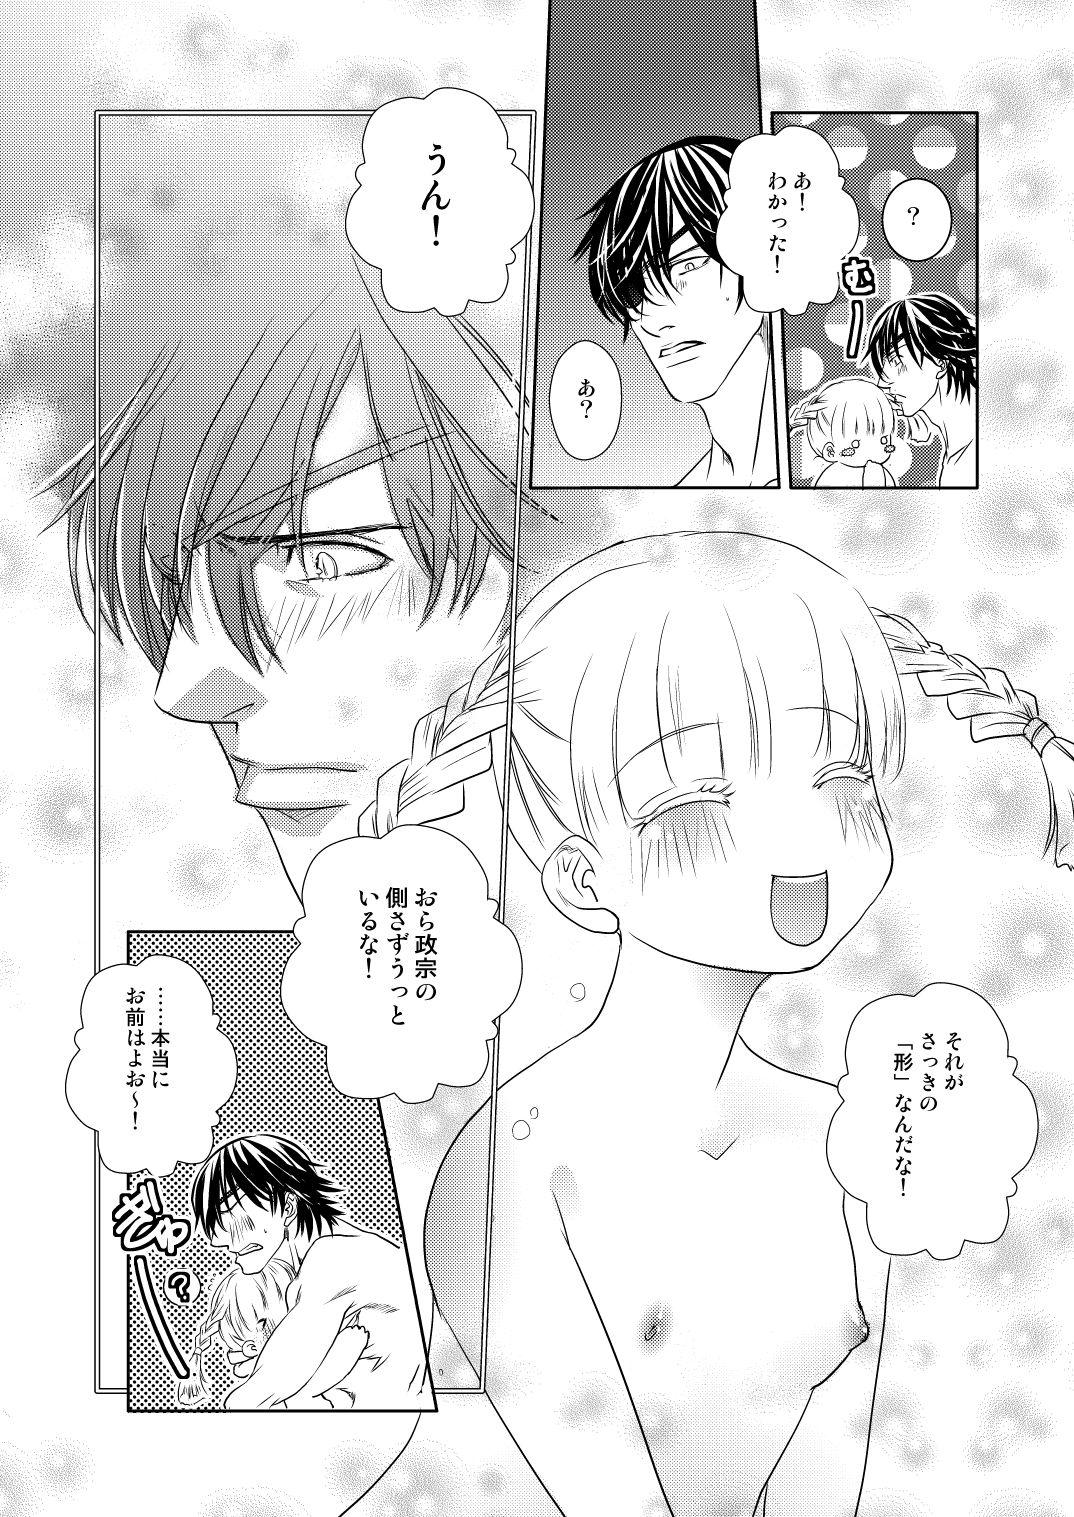 Female Orgasm Fuyu no Okomori DateItsu Manga - Sengoku basara Bush - Page 10